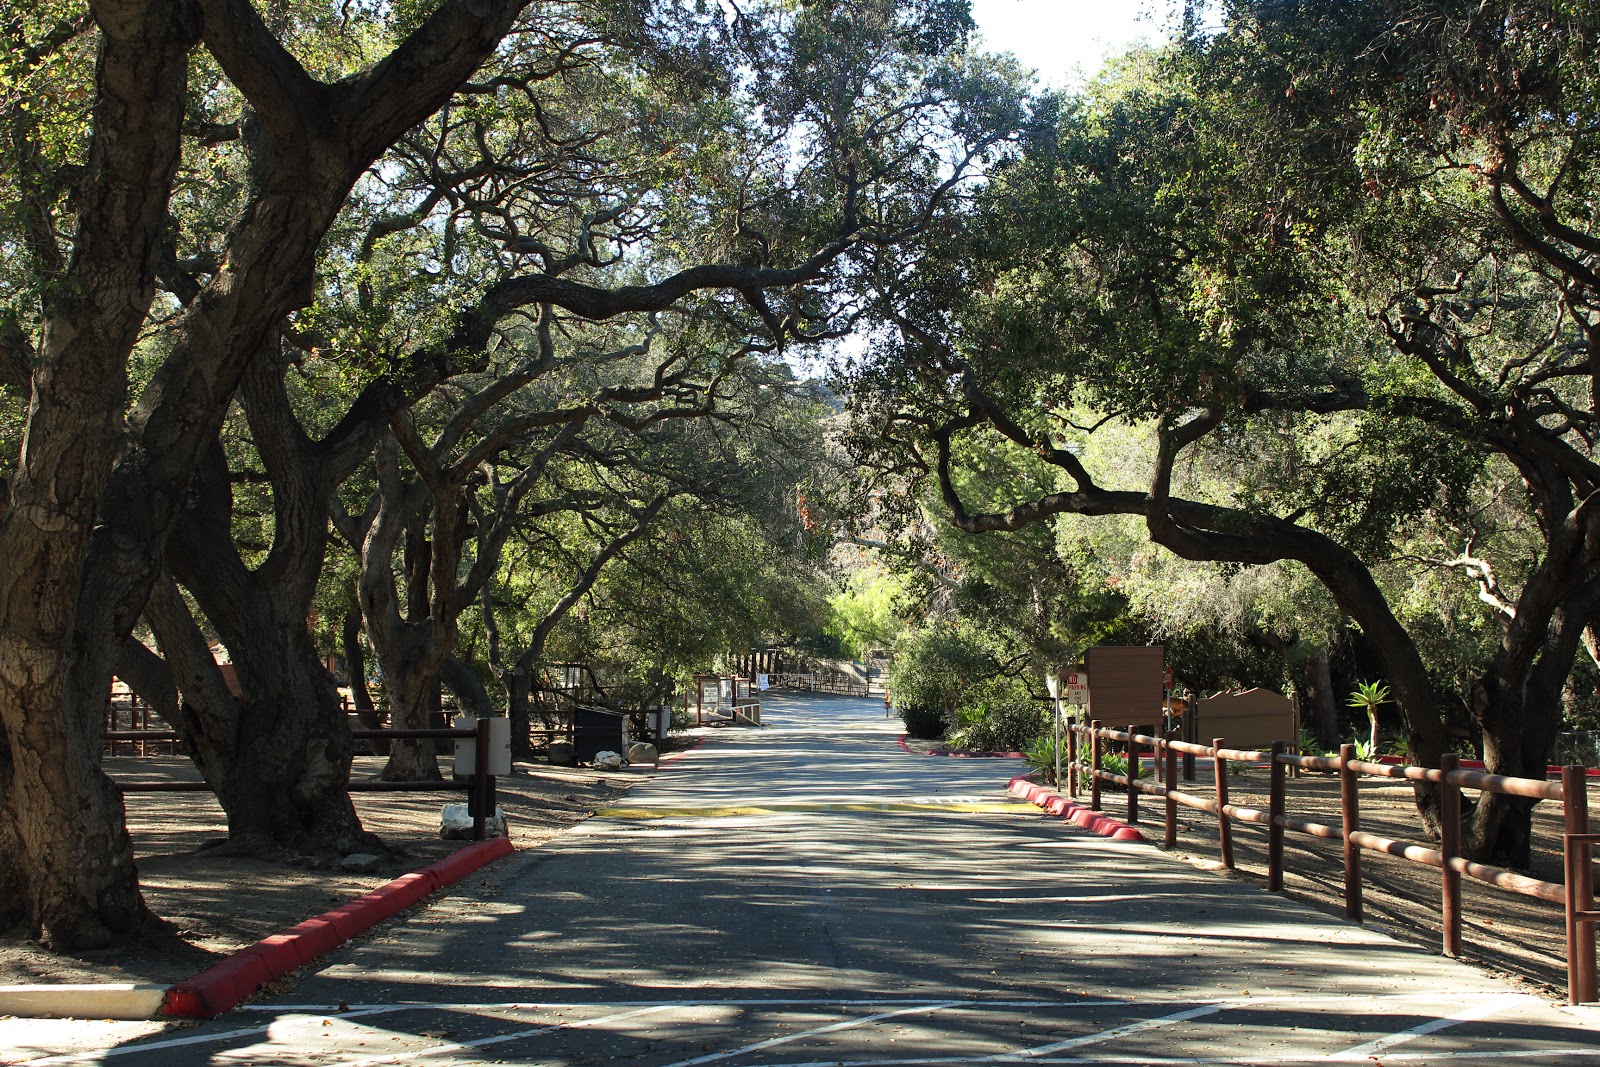 Tree lined street at Camarillo Grove Park.